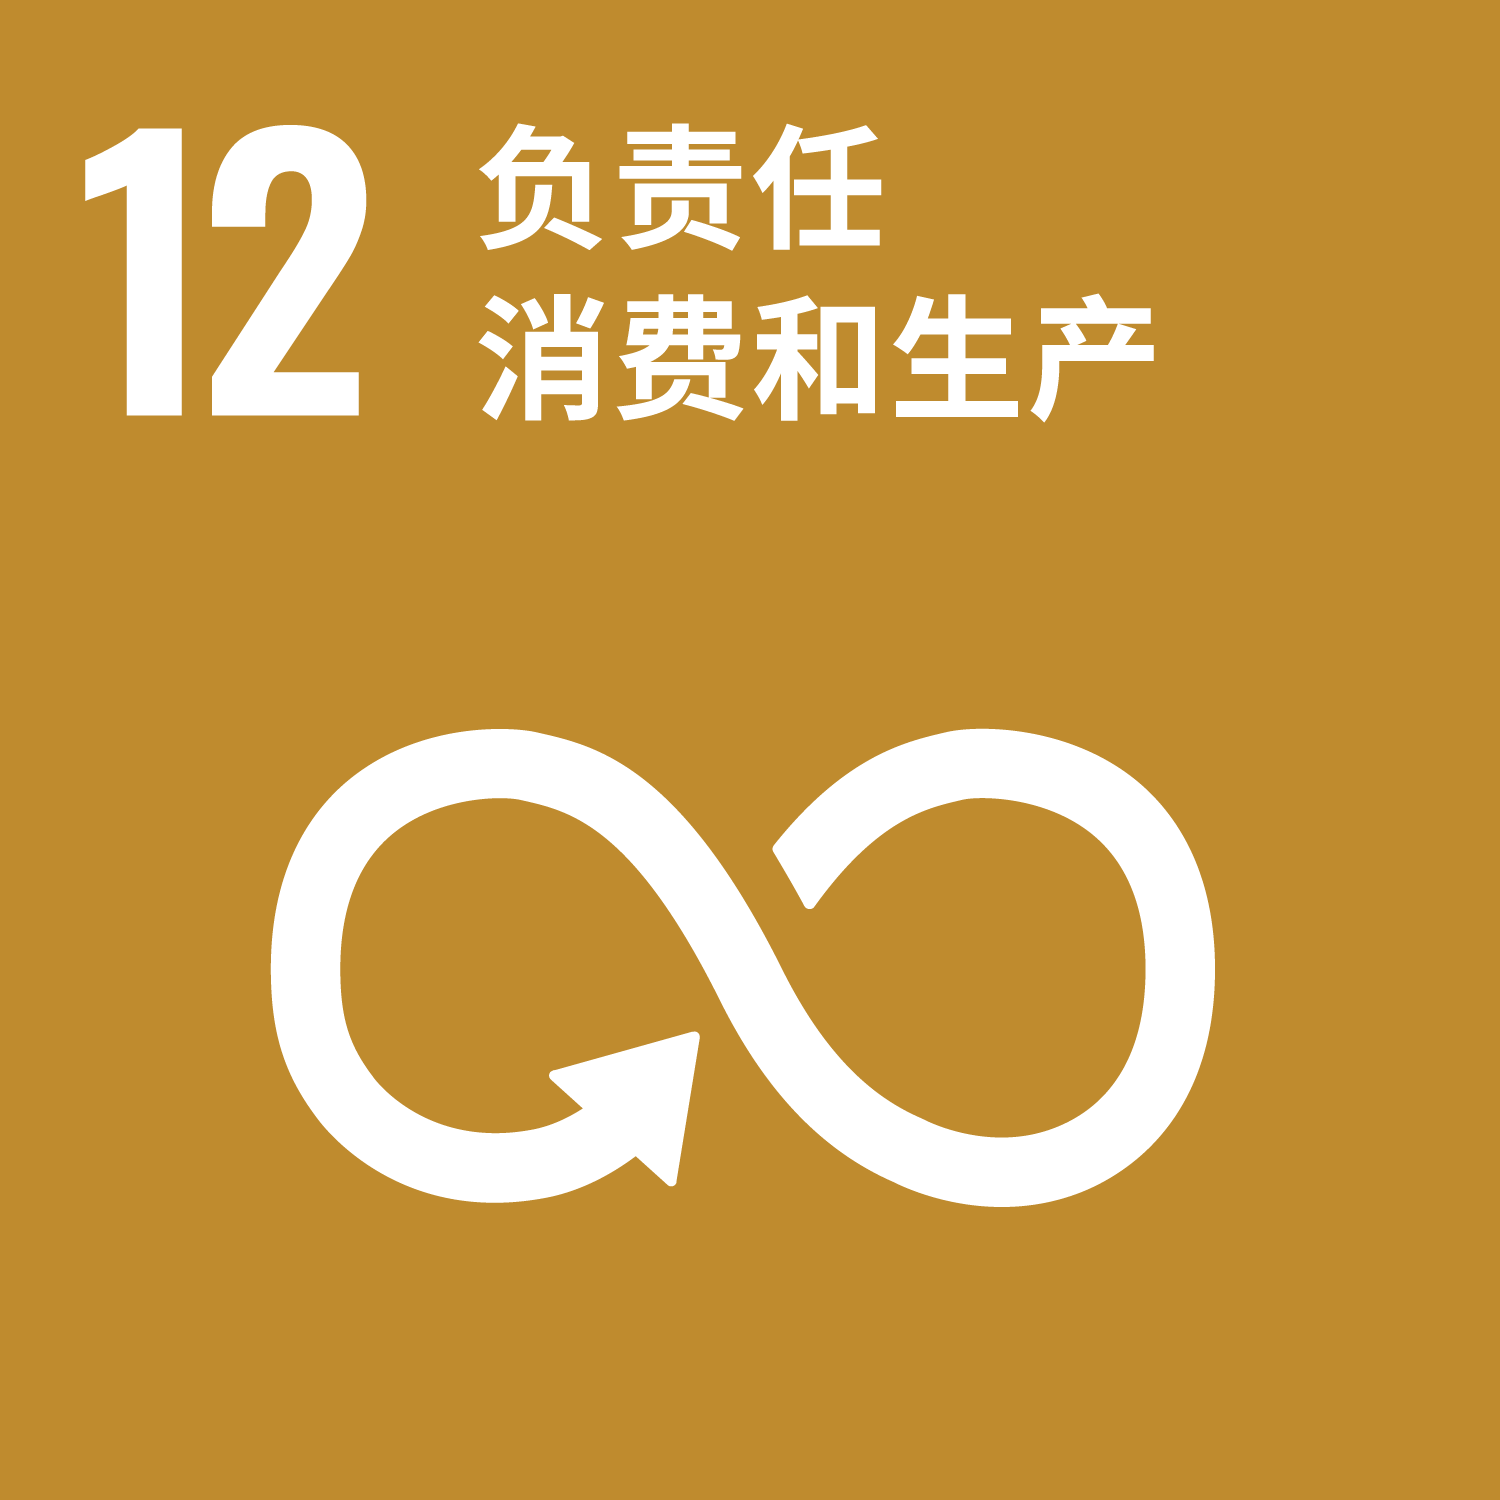 No.12 我们的优先可持续发展目标